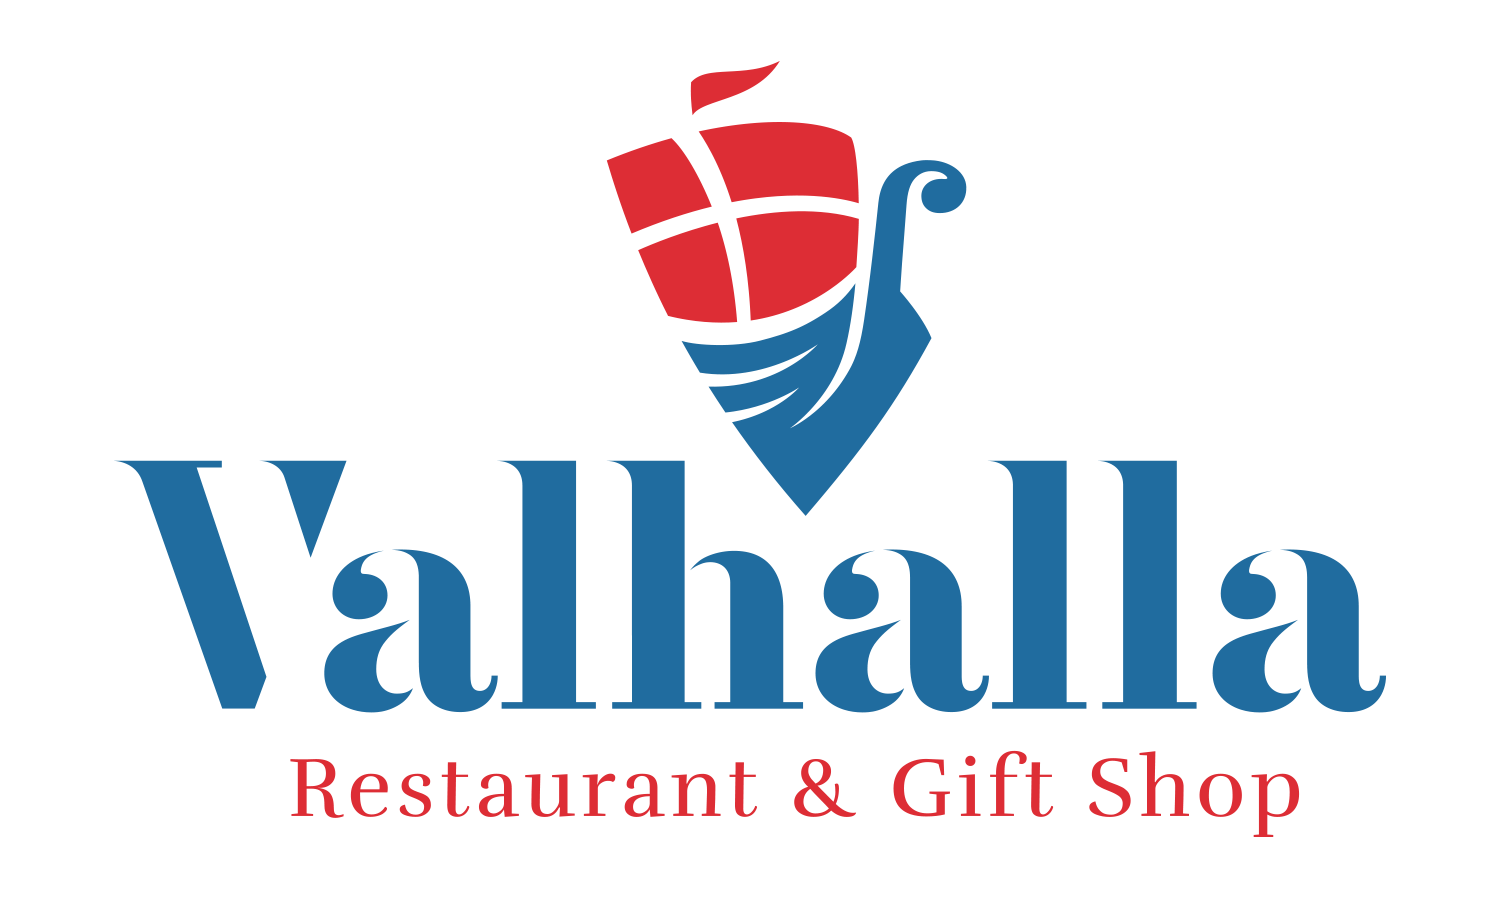 Valhalla Restaurant & Gifts